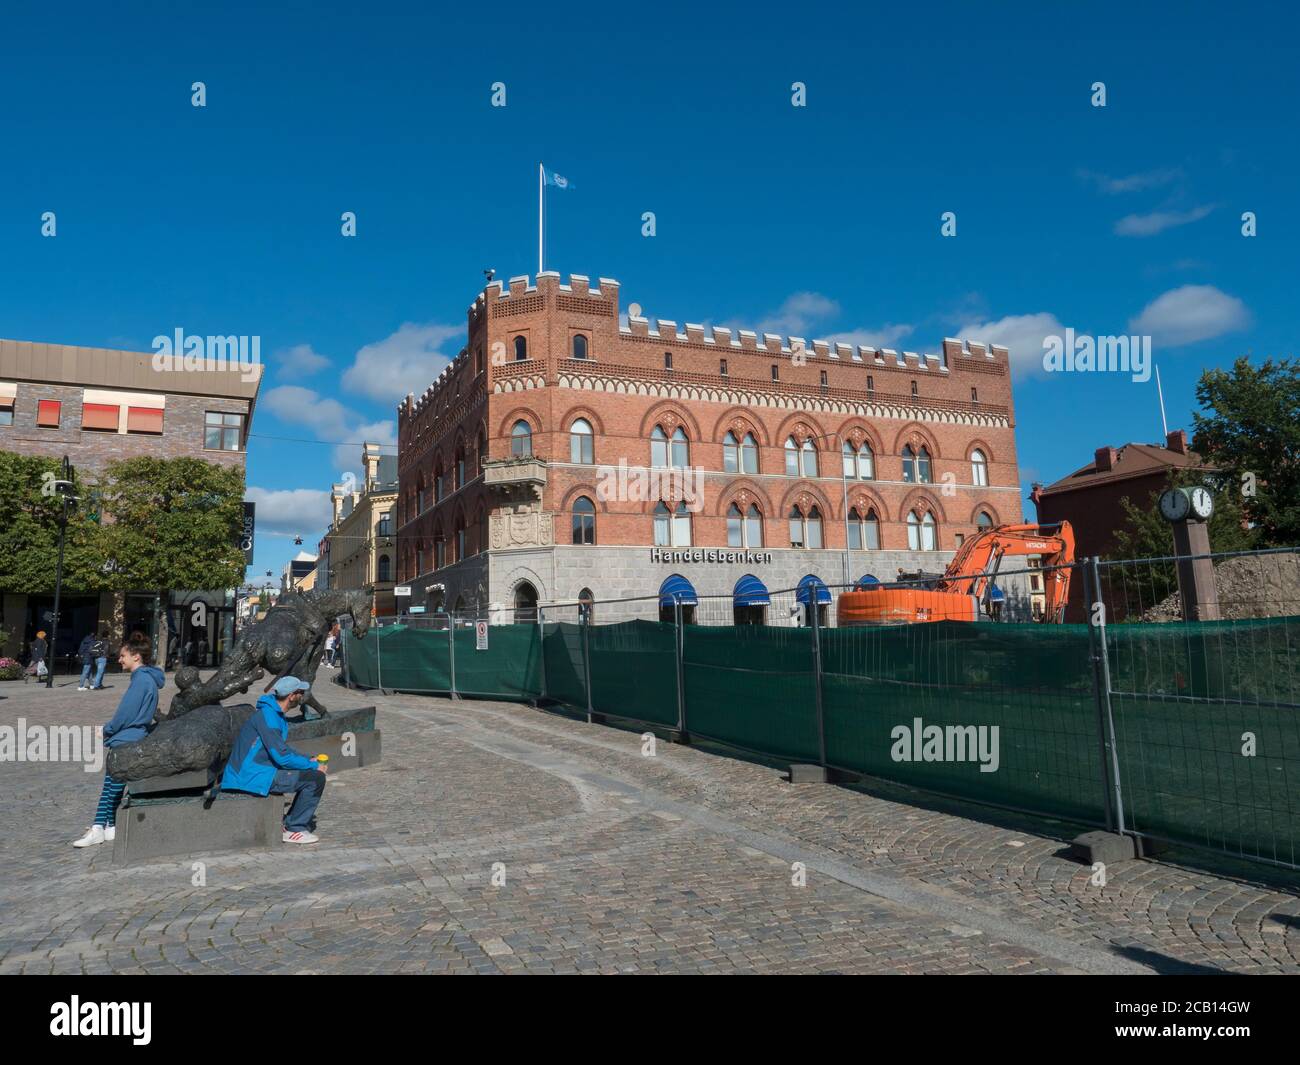 Ornskoldsvik, Suède, 6 septembre 2019 : rue au centre de la ville d'Ornskoldsvik avec des bâtiments historiques, des magasins et des personnes à pied. Nord de la Suède Banque D'Images